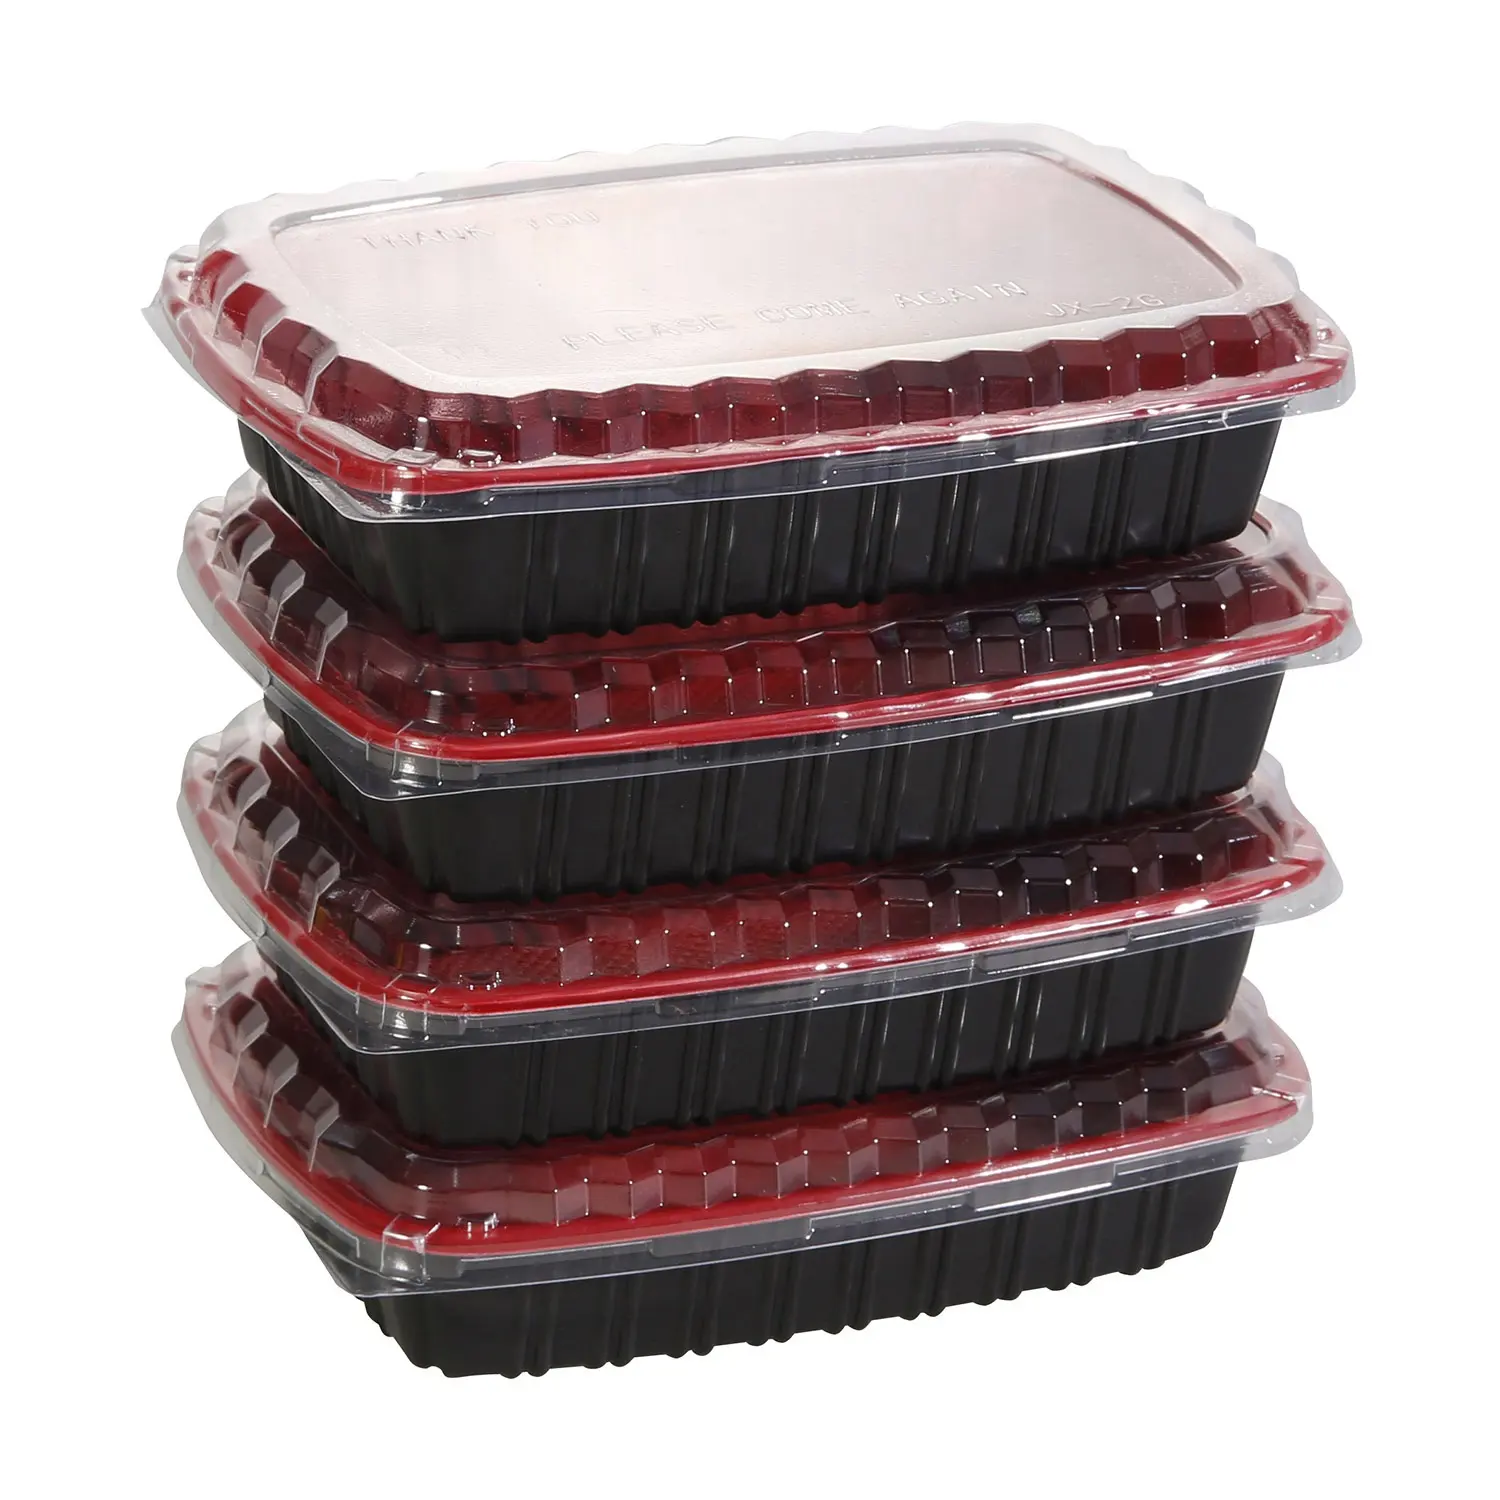 Contenedor de comida desechable para microondas, contenedor de comida con tapa transparente, Material PP, rojo y negro